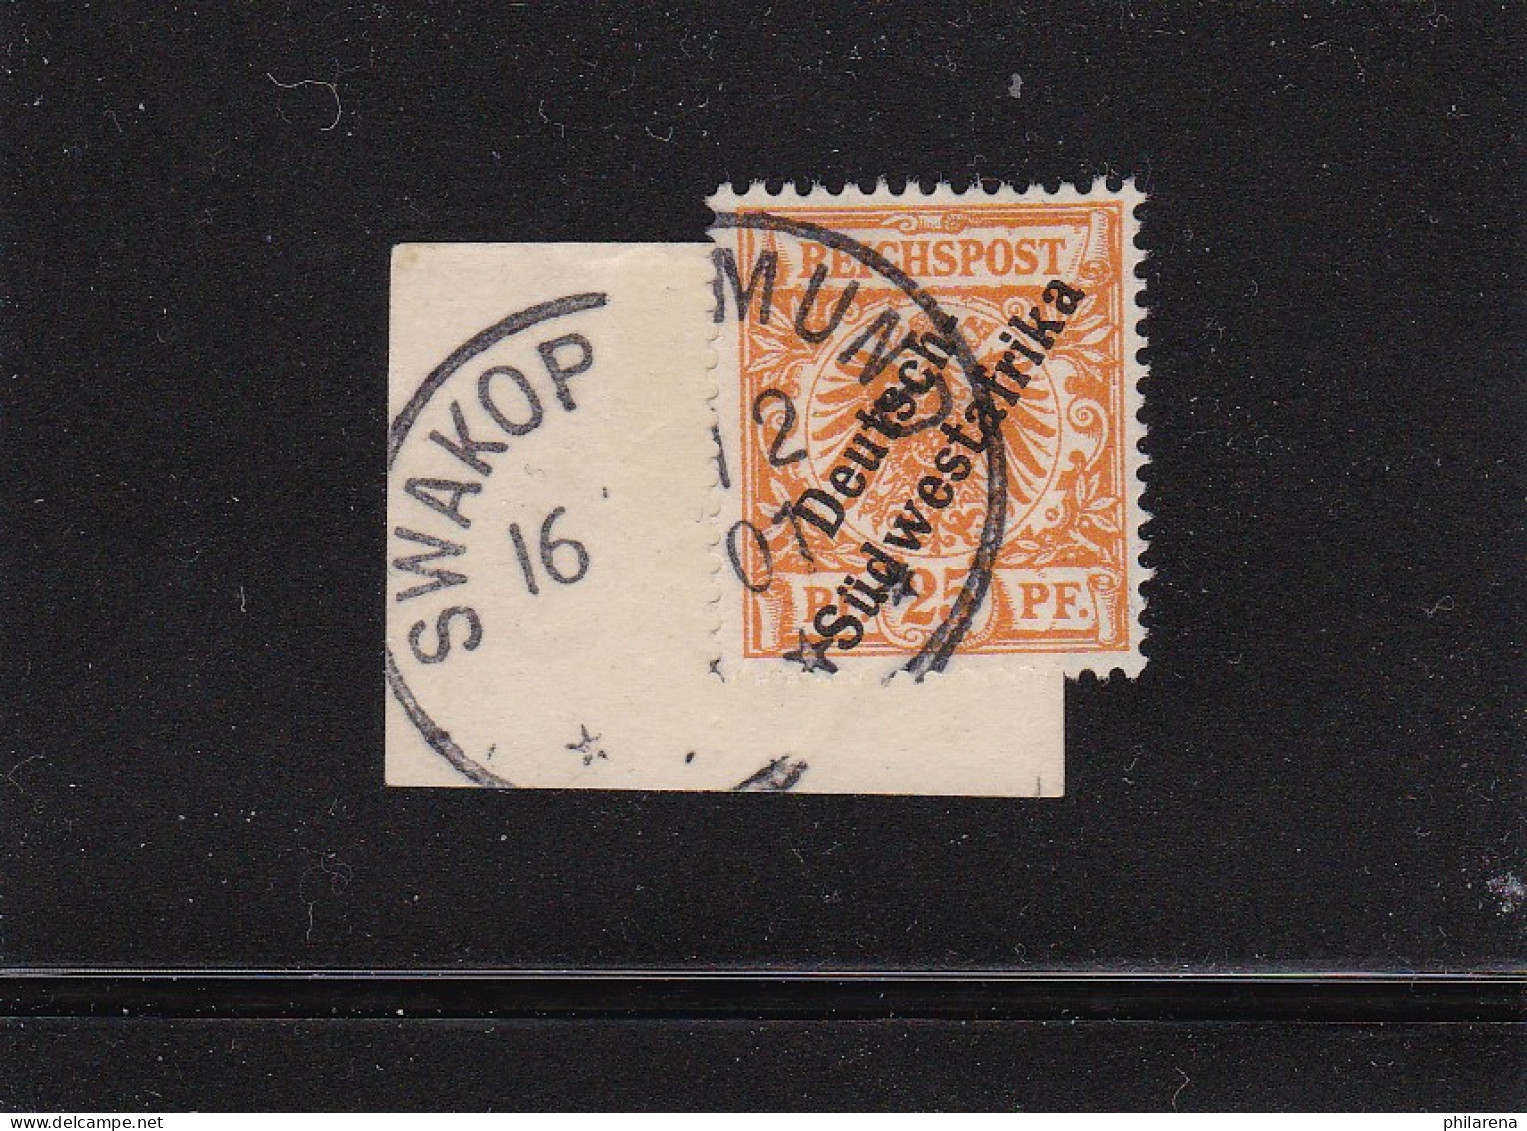 DSWA: MiNr. 9a, Gestempelt Swakopmund 1901, Briefstück - Deutsch-Südwestafrika